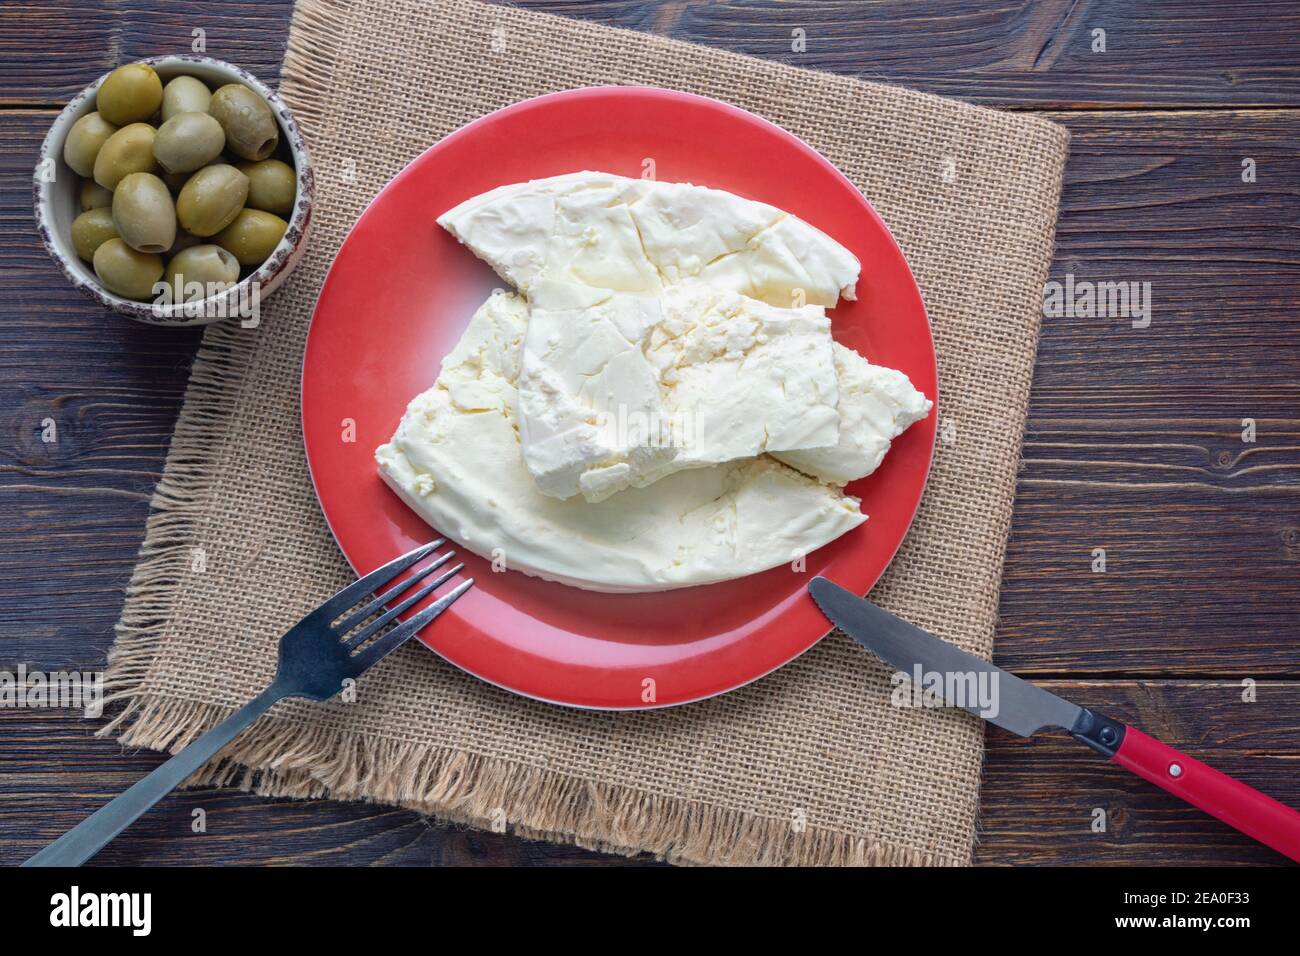 Cuisine des Balkans. Monténégro. Le fromage Pljevaljski est un fromage blanc doux local dans une assiette rouge sur une table rustique sombre. Copier l'espace Banque D'Images